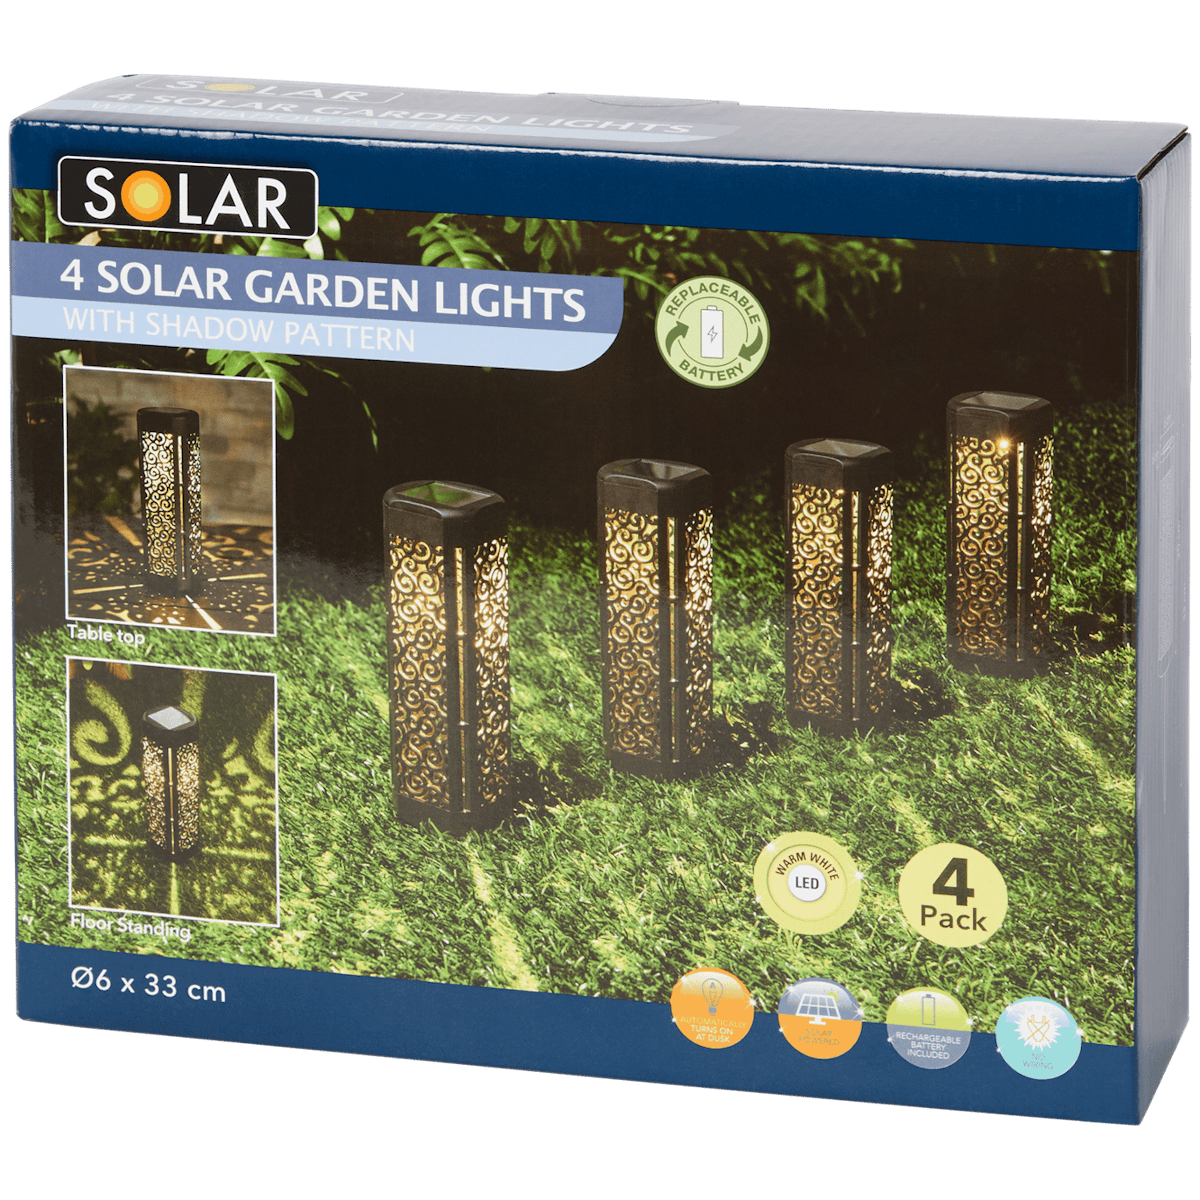 Solar tuinverlichting op zonne-energie